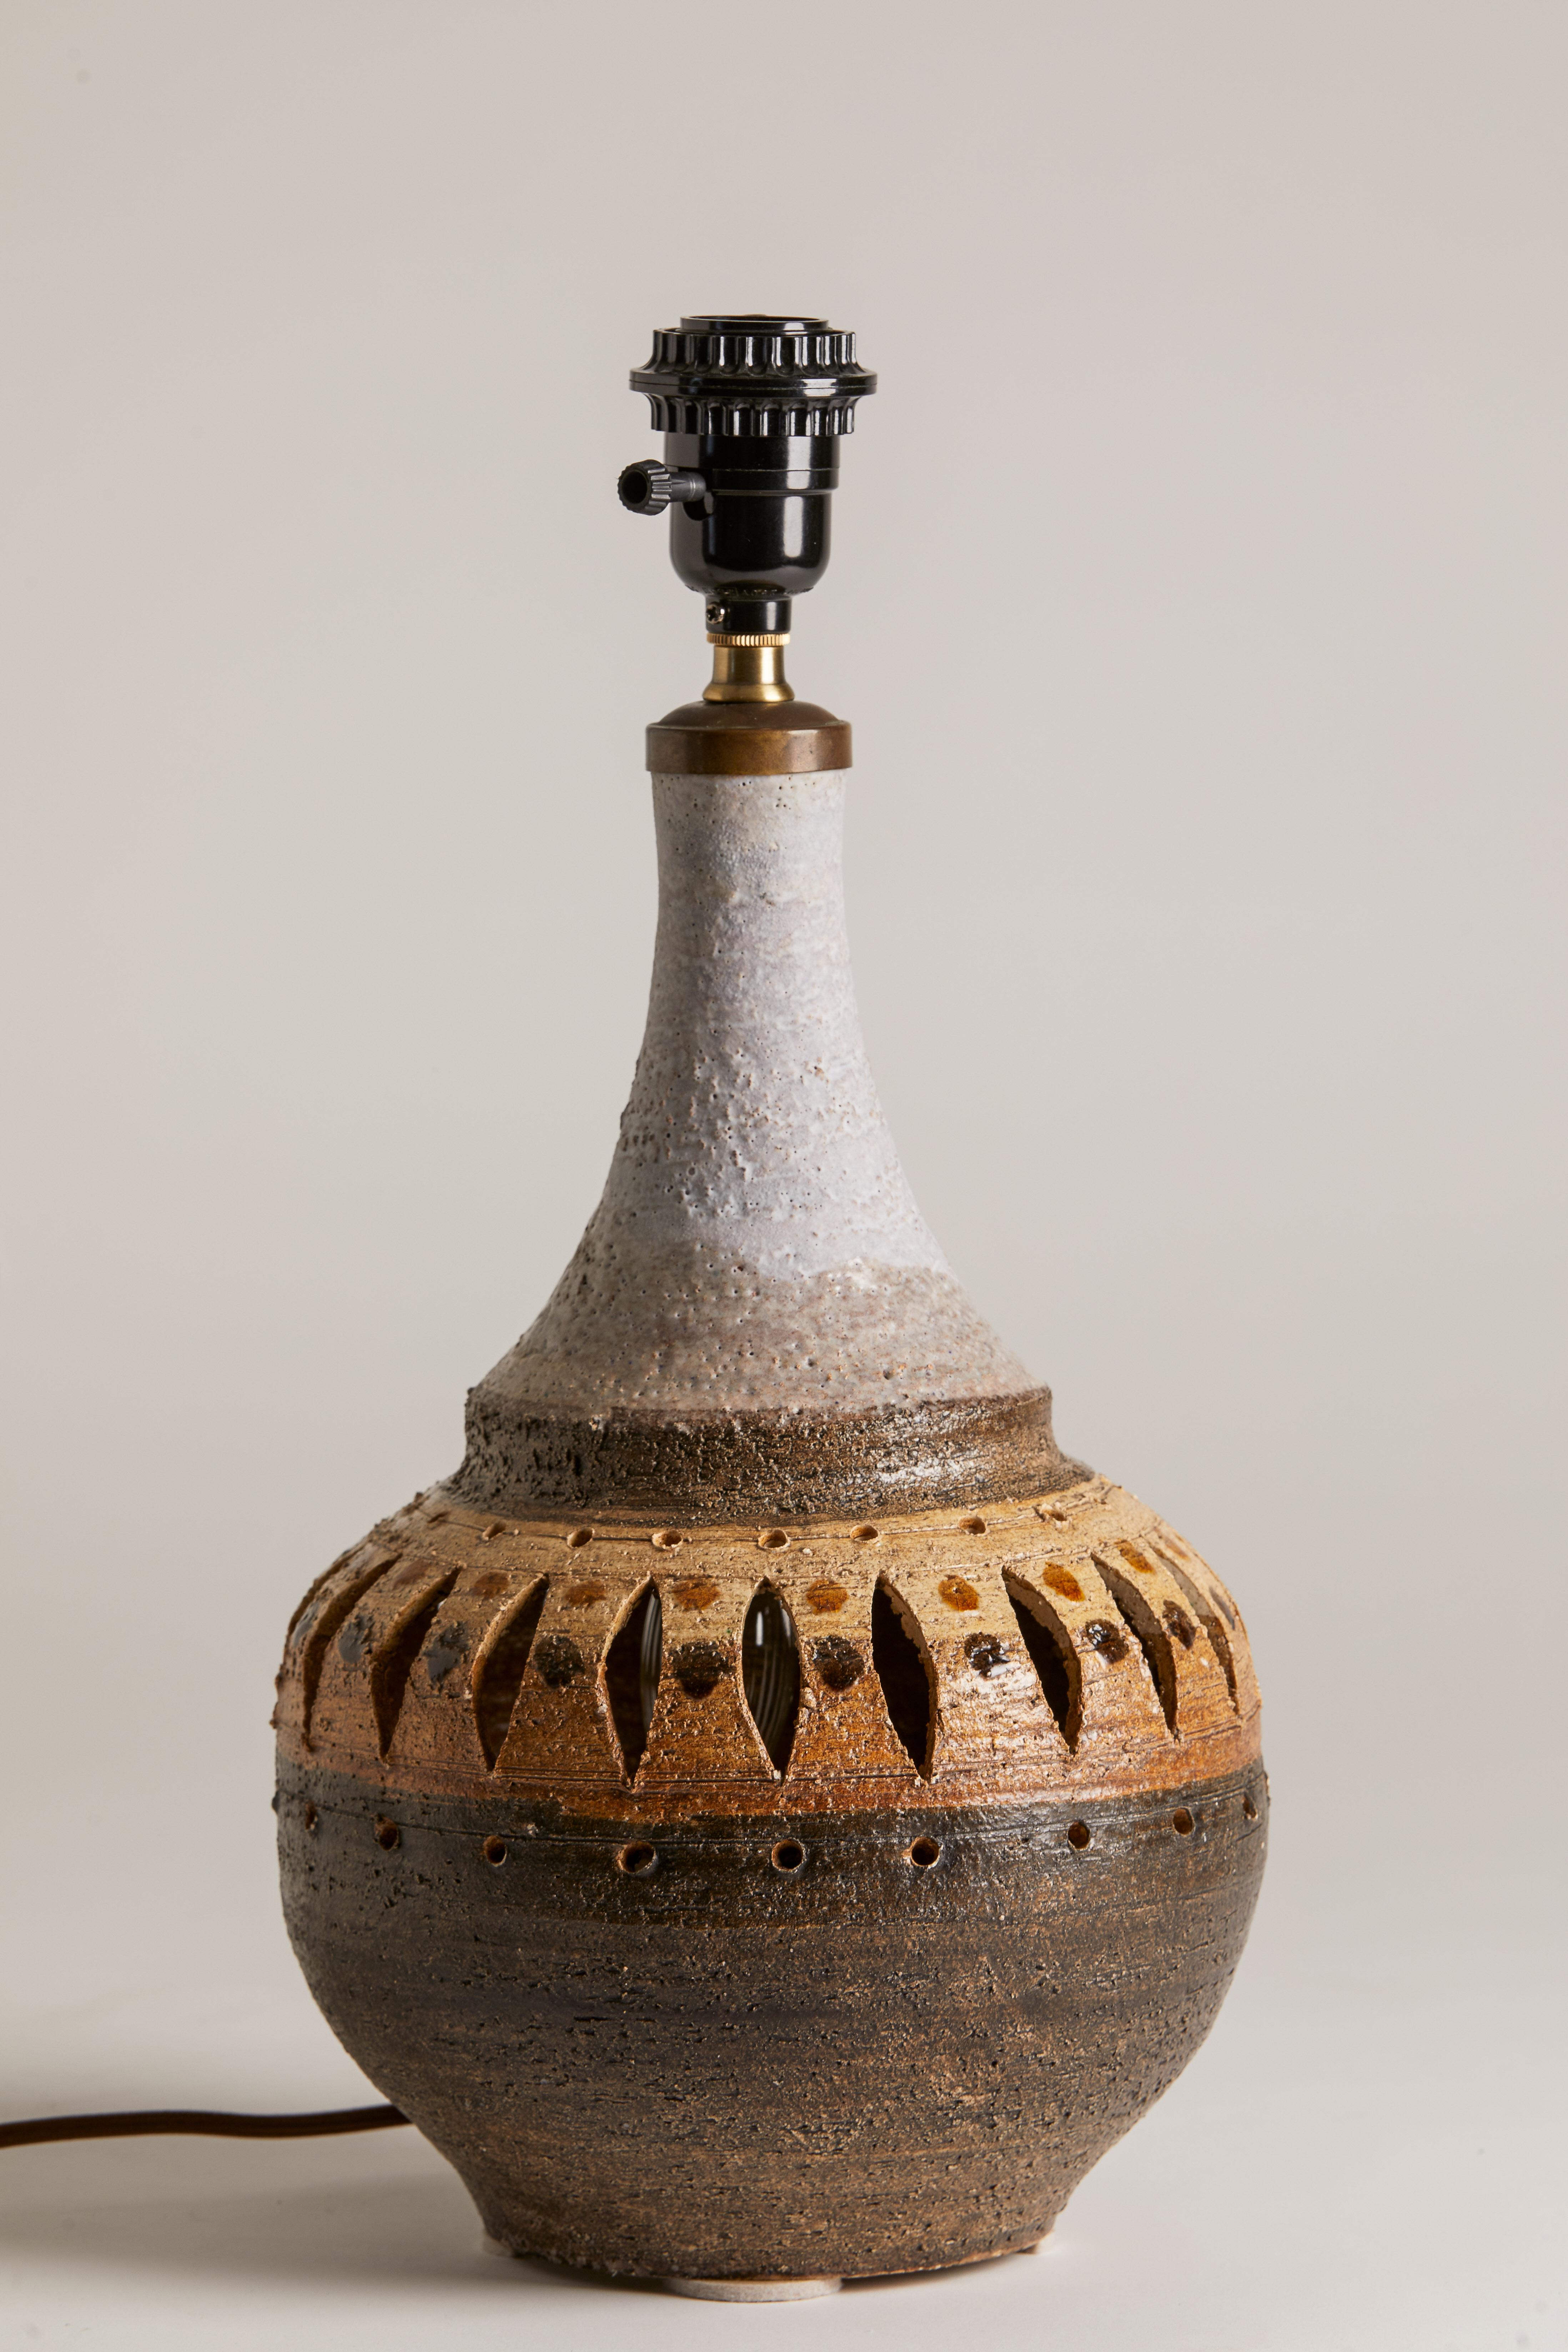 lampe en poterie de Pillitier française des années 1970
Abat-jour non inclus